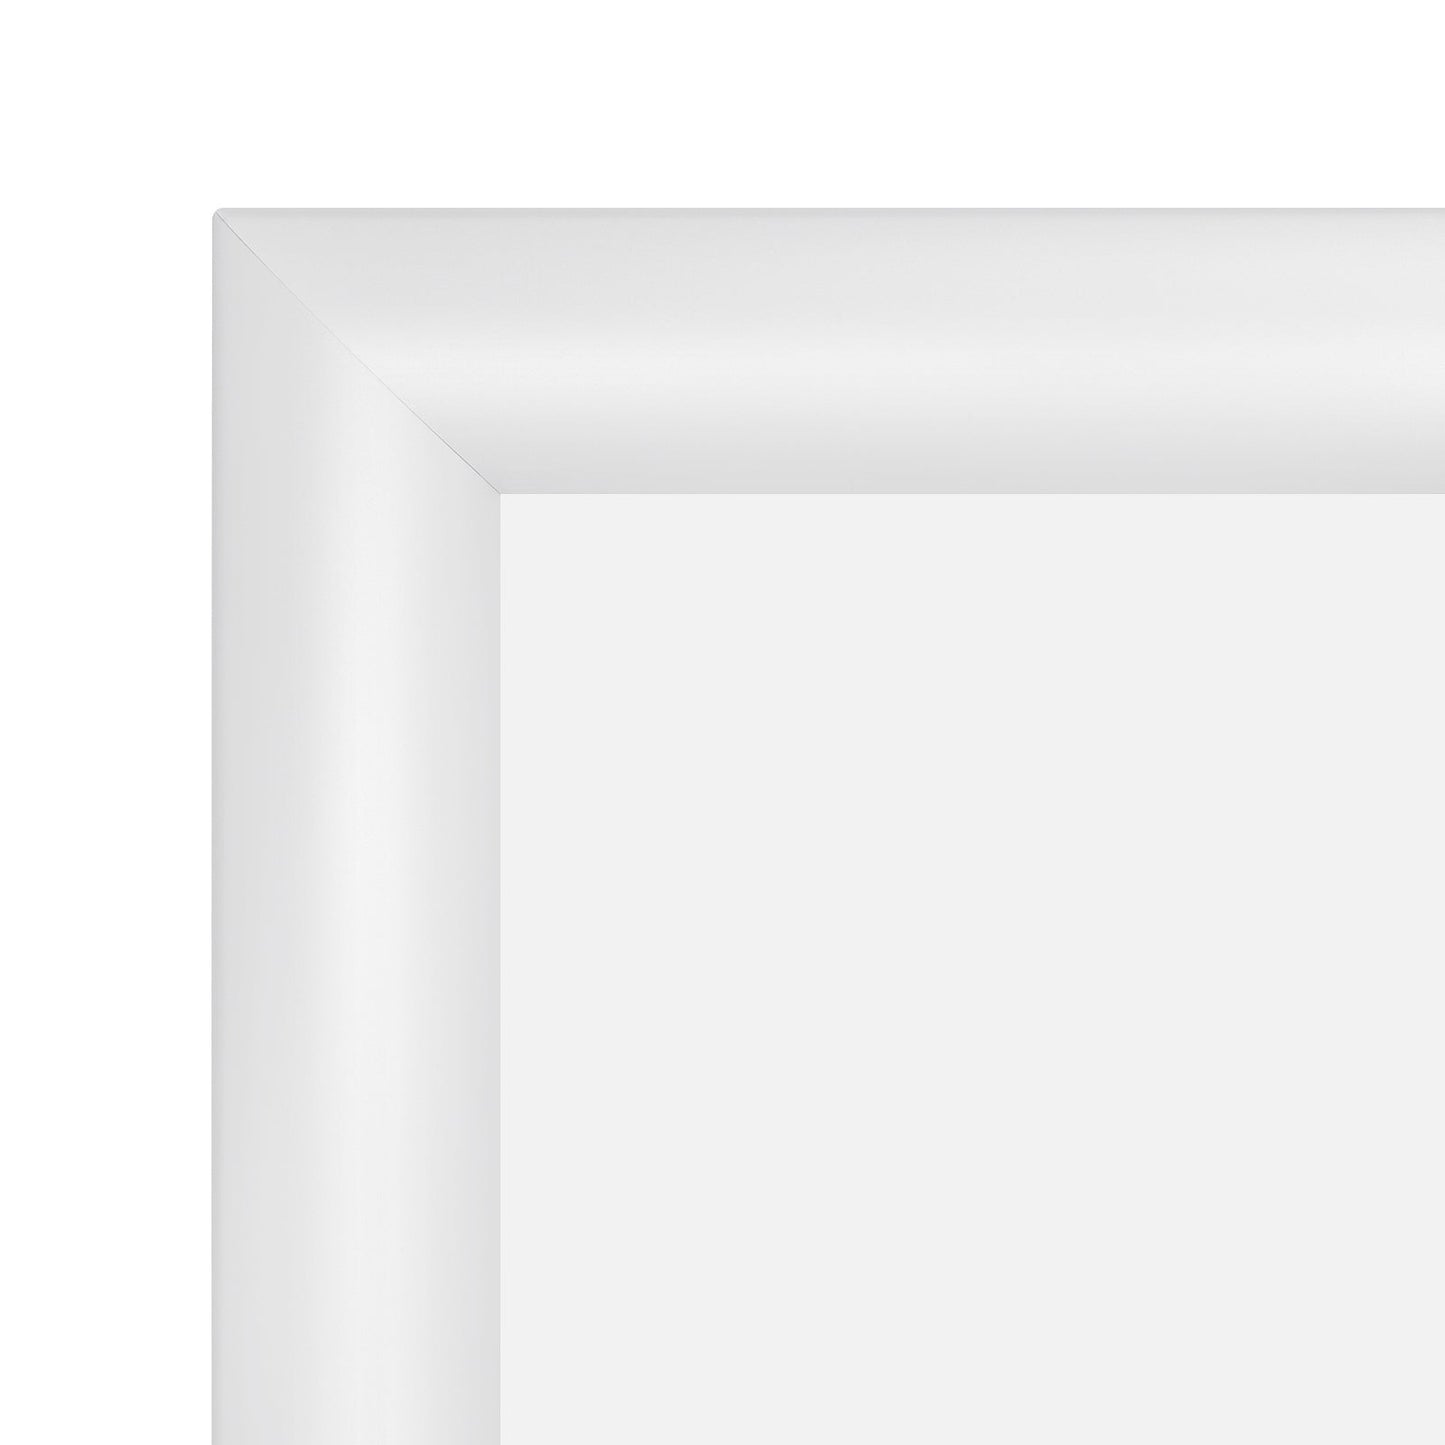 16x16 White SnapeZo® Snap Frame - 1.2" Profile